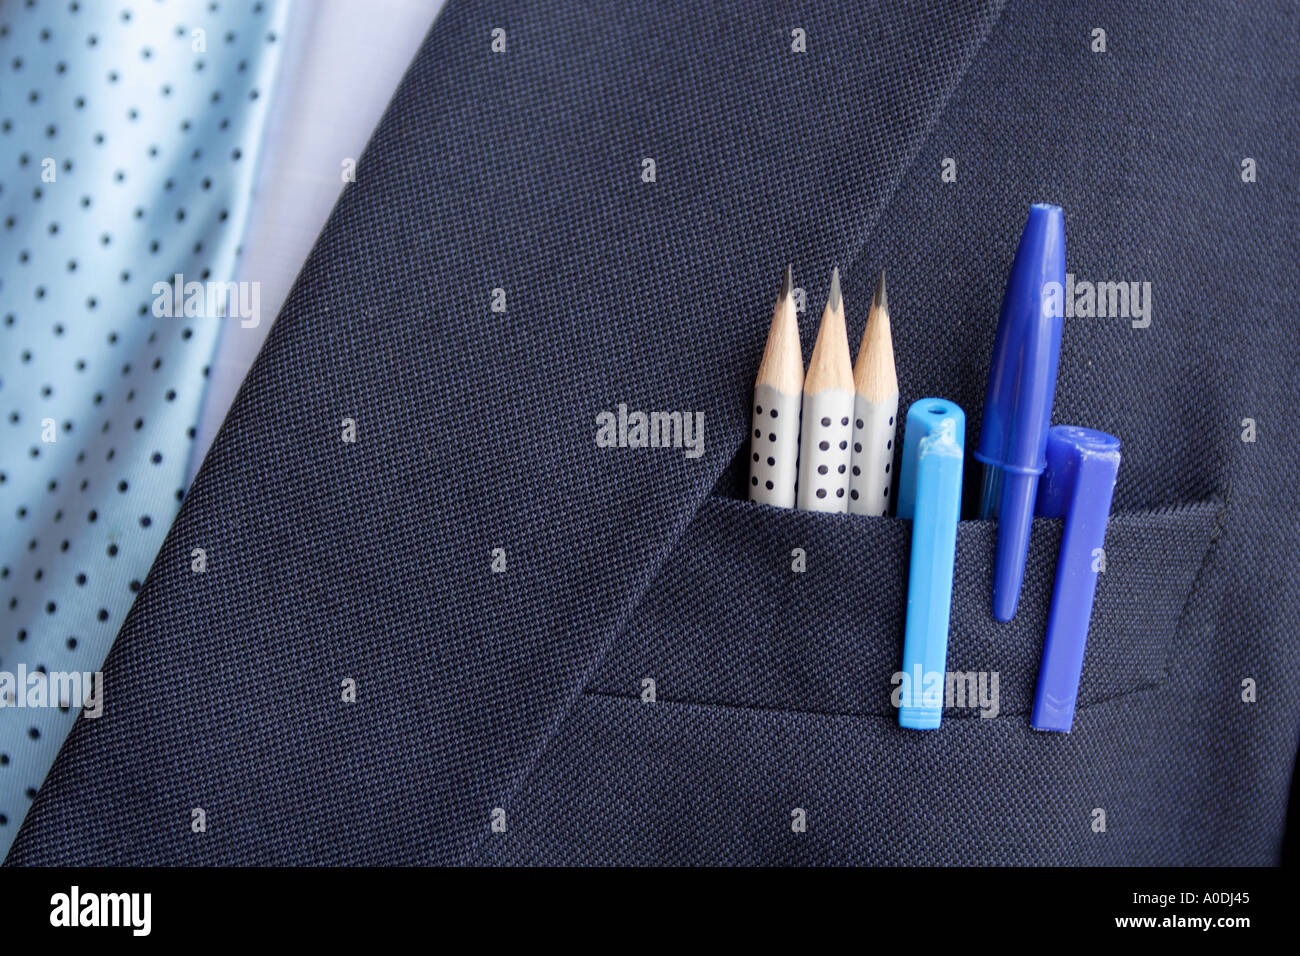 Penne in tasca immagini e fotografie stock ad alta risoluzione - Alamy